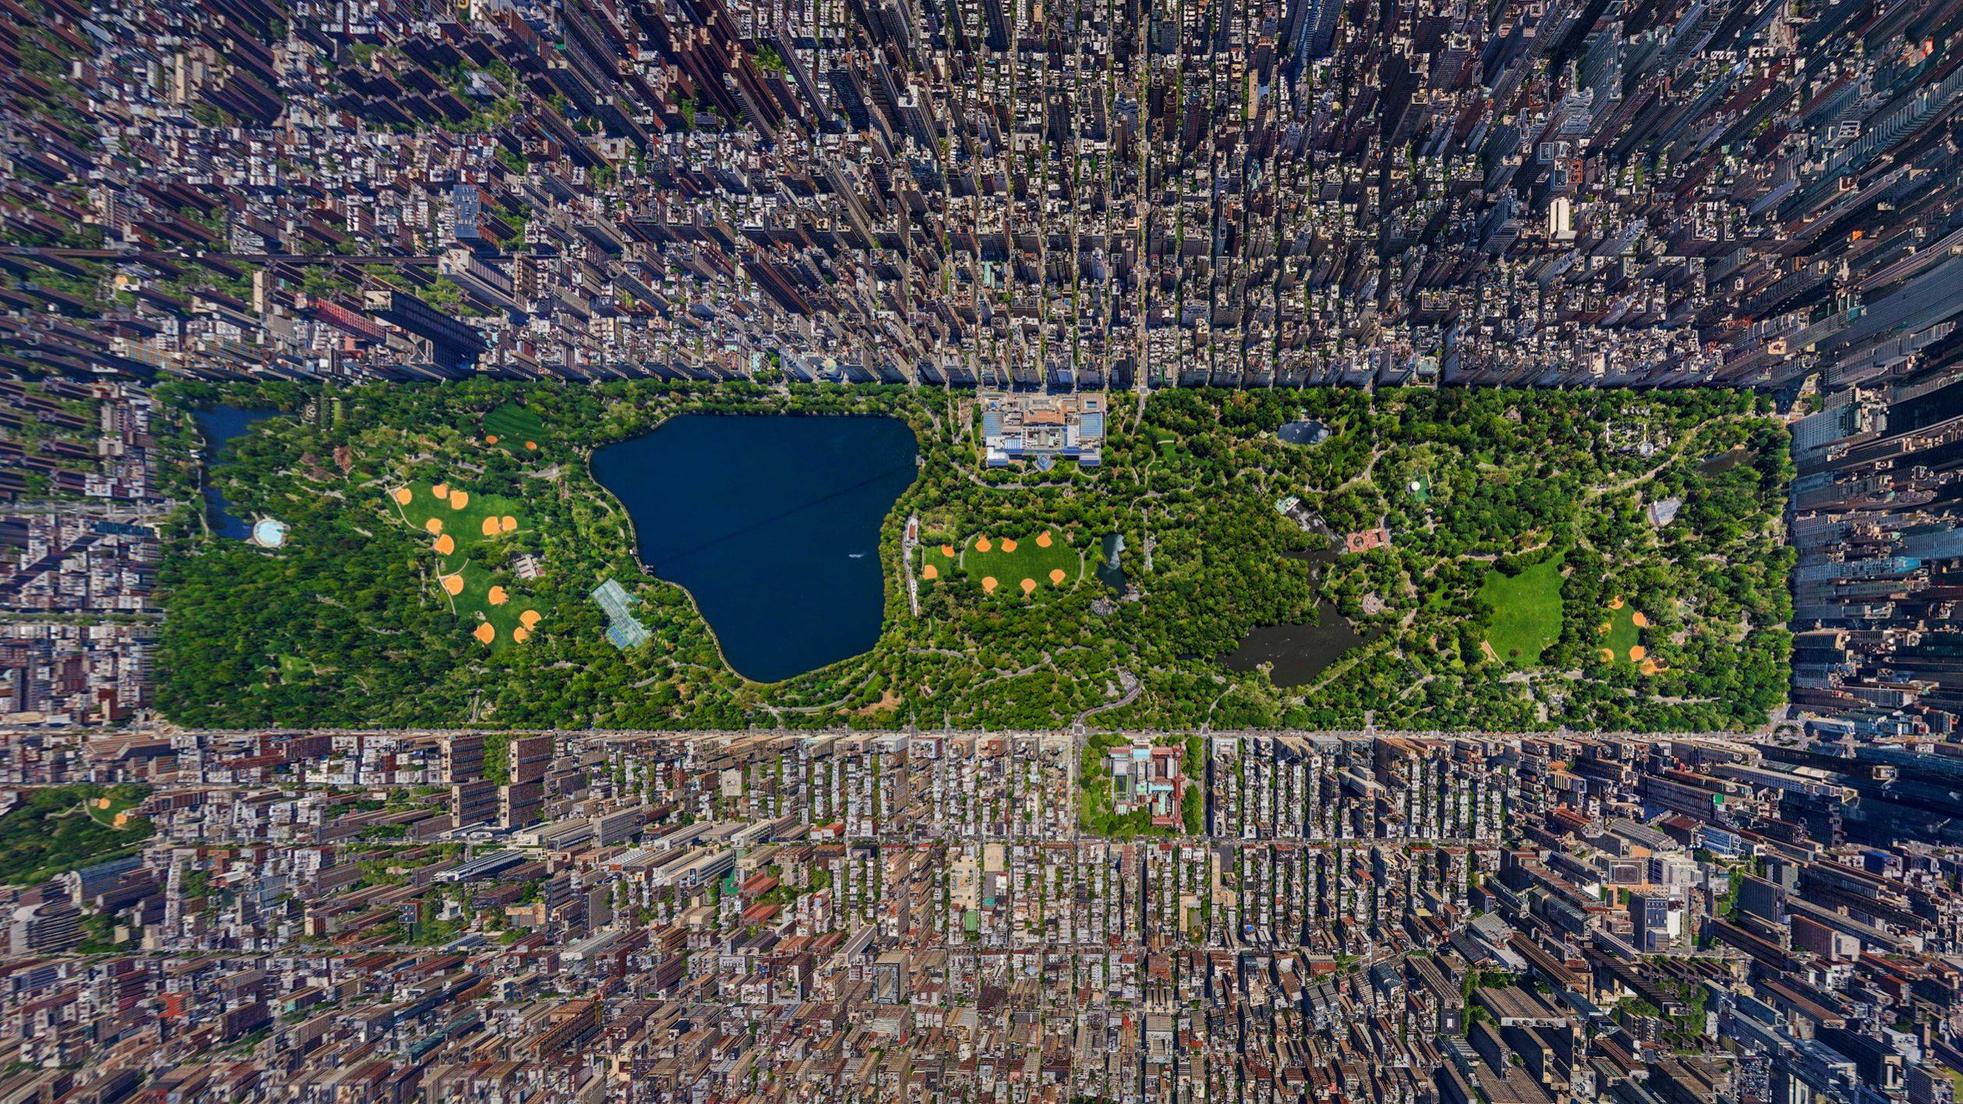 central park, new york, manhattan, man made, cities